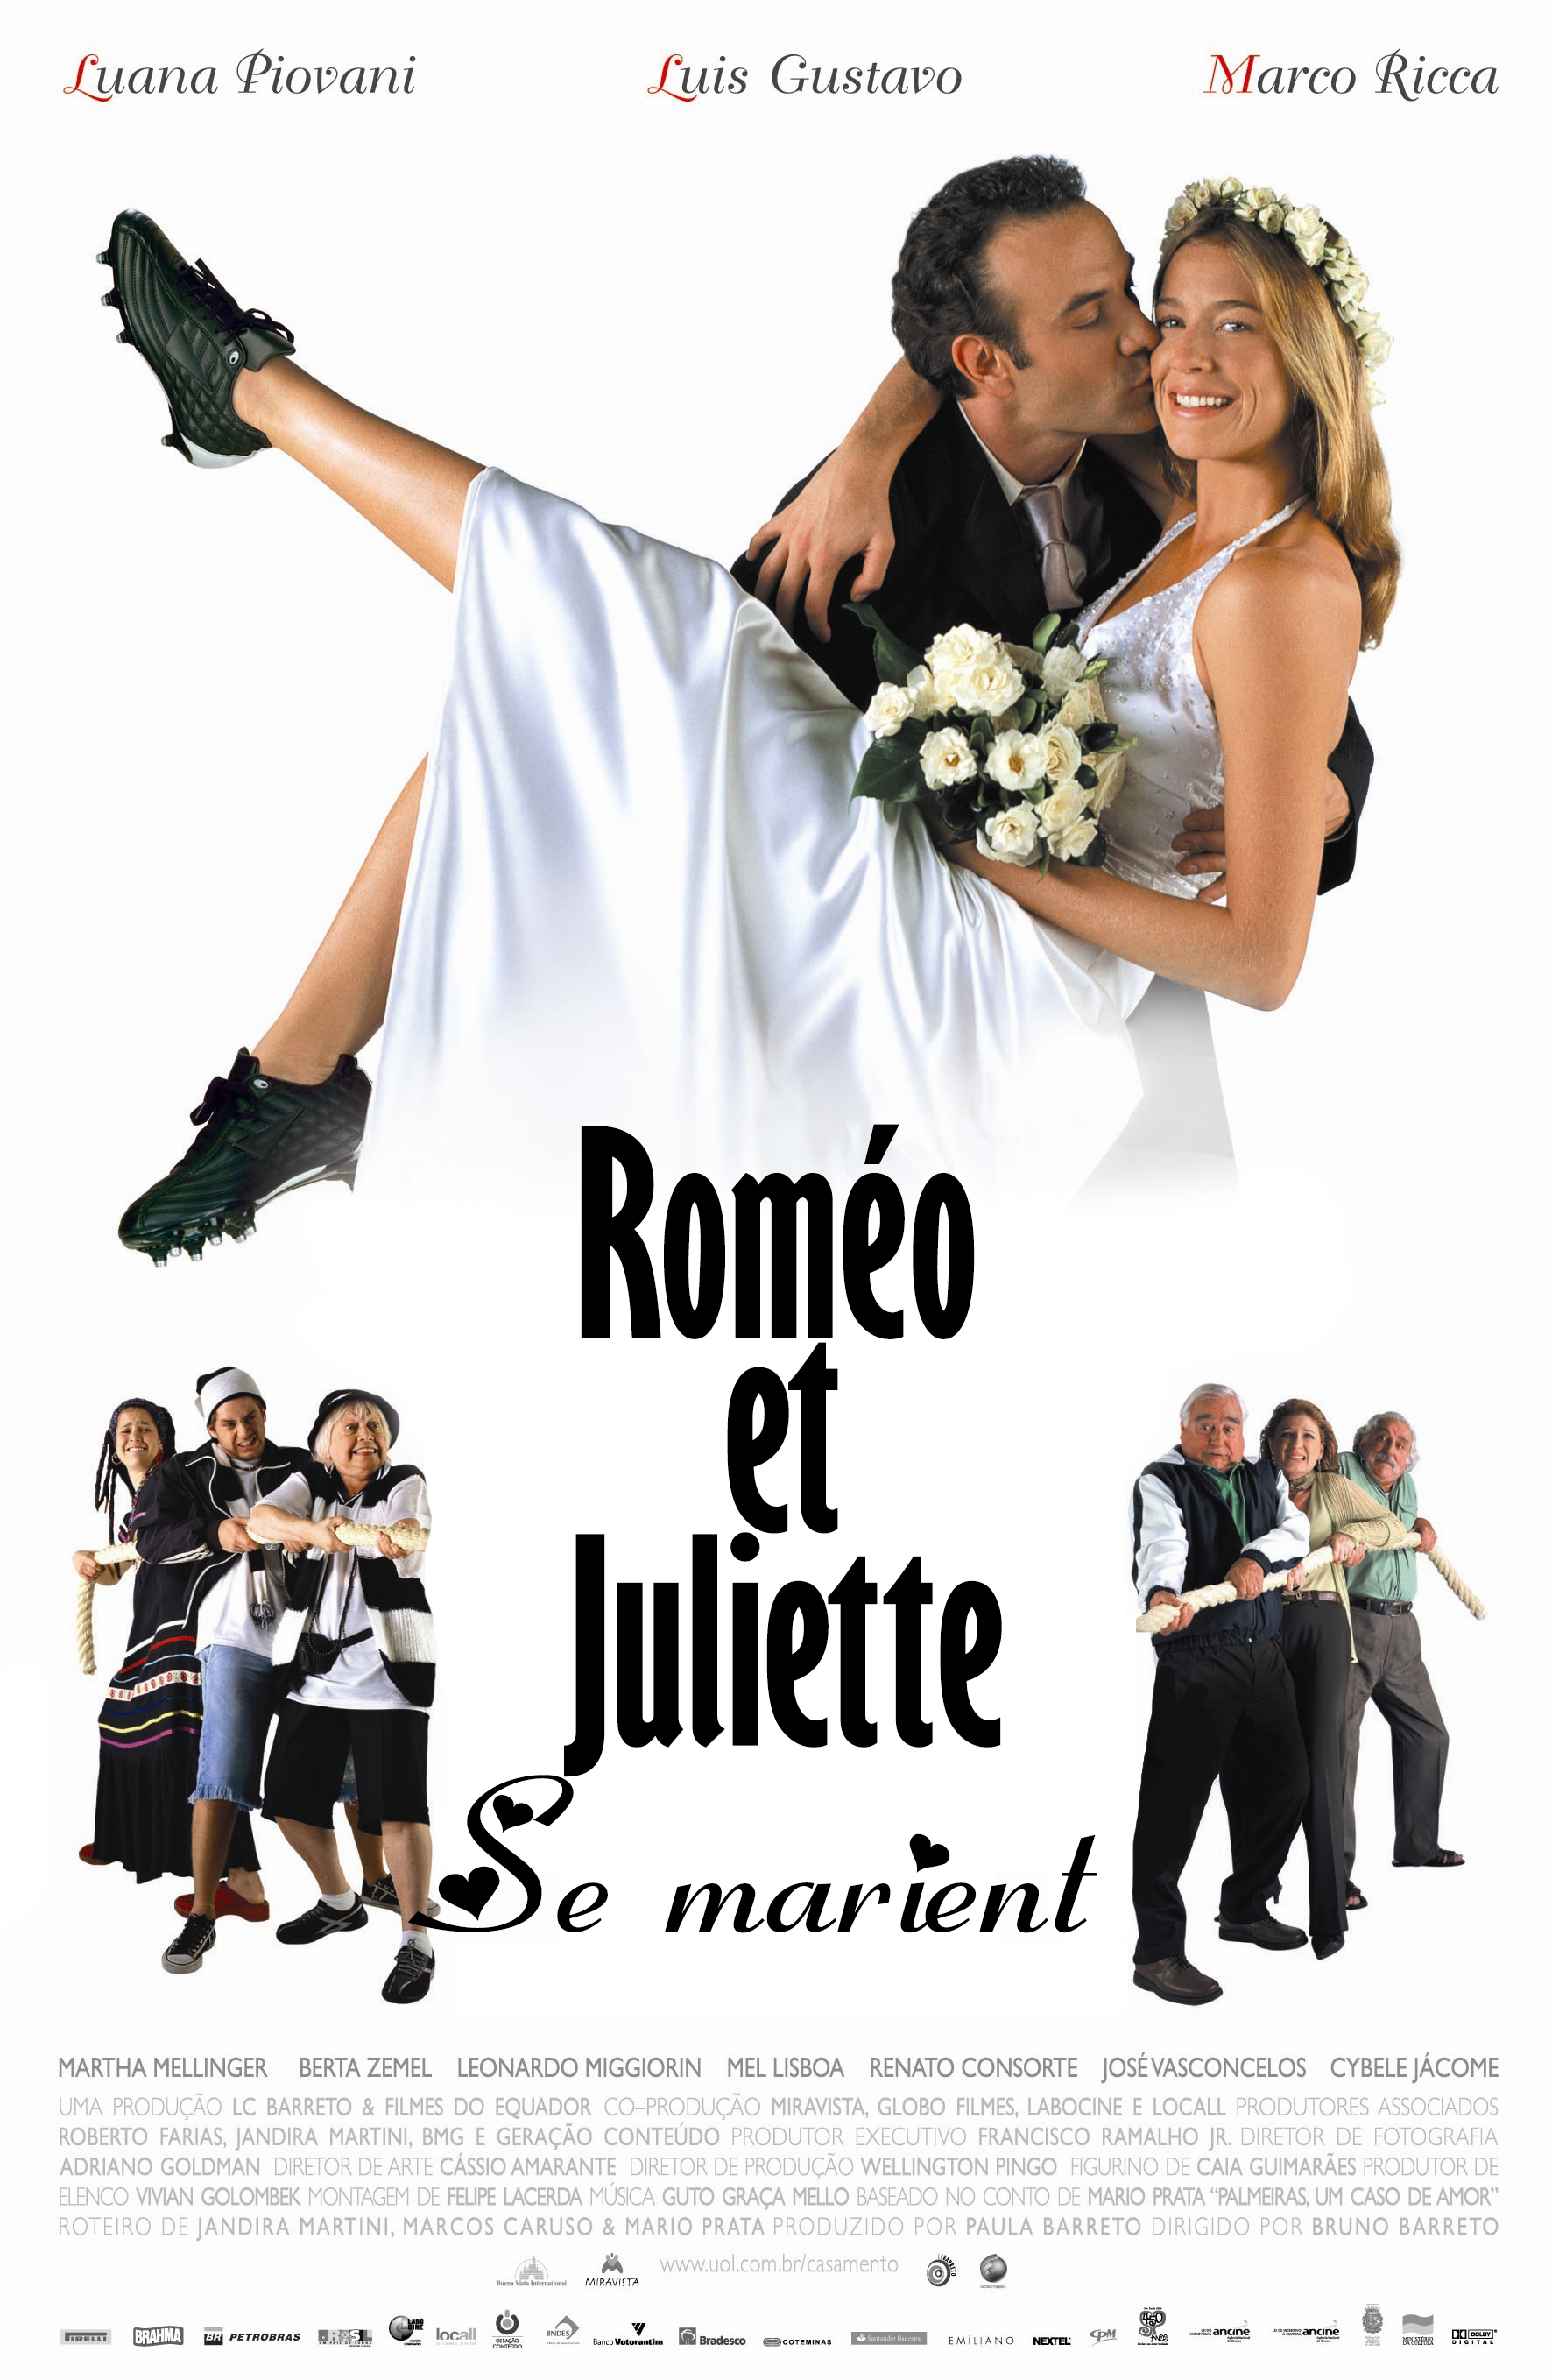 ROMÉO ET JULIETTE SE MARIENT GET MARRIED